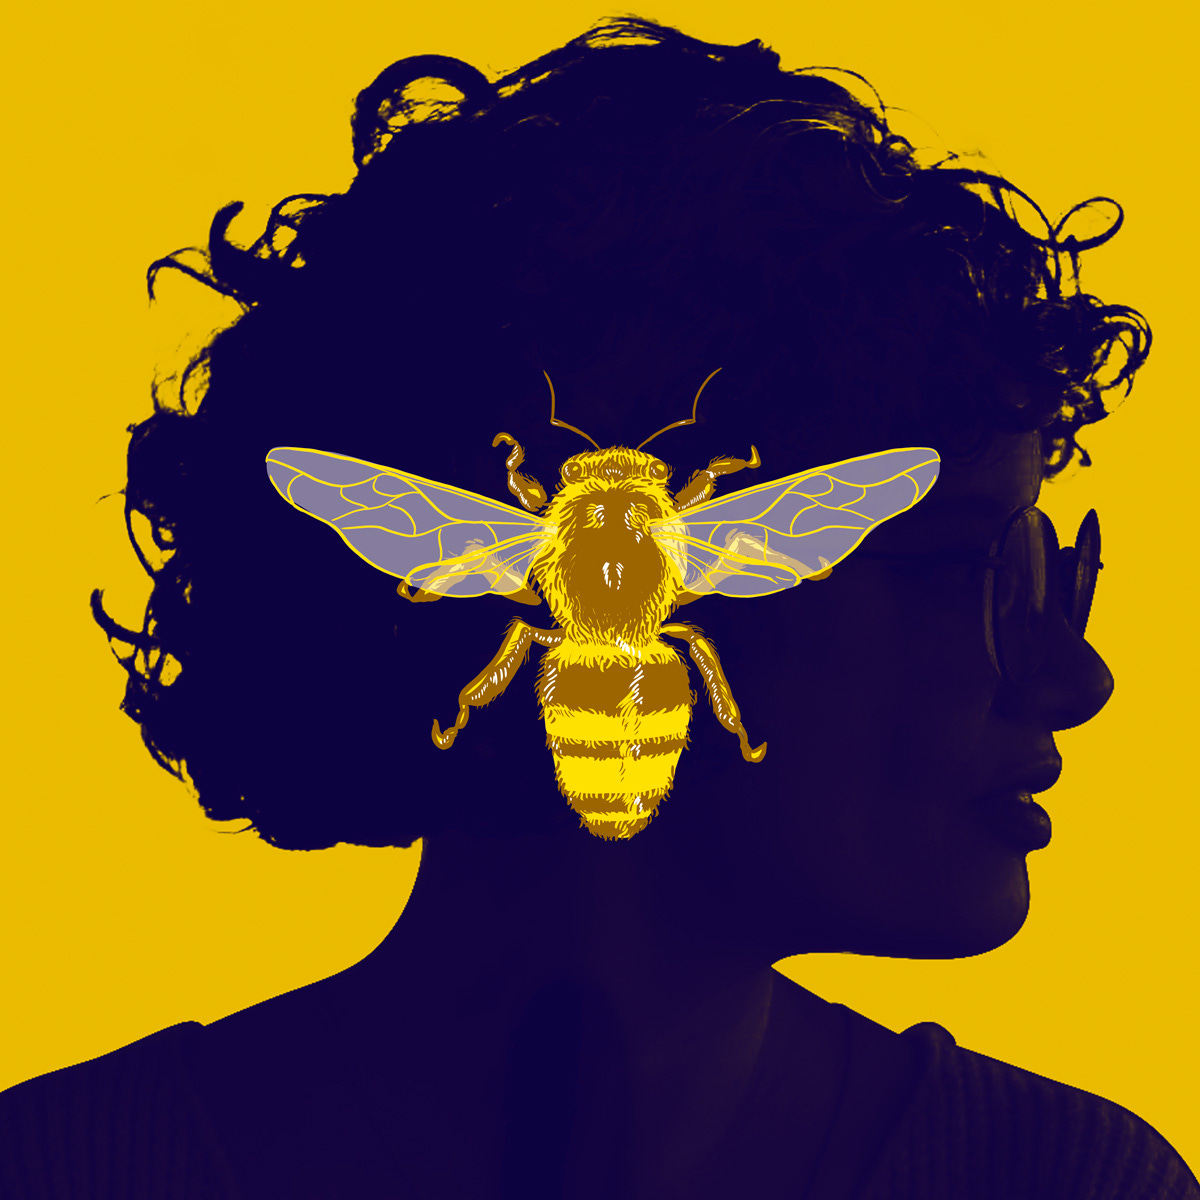 Capa do meu podcast: a ilustração da abelha de Bobagns Imperdíveis em tom dourado, sobre a silhueta do meu rosto de perfil, com óculos e cabelos cacheados, envoltas em sombras azuladas, sobre um fundo amarelo dourado